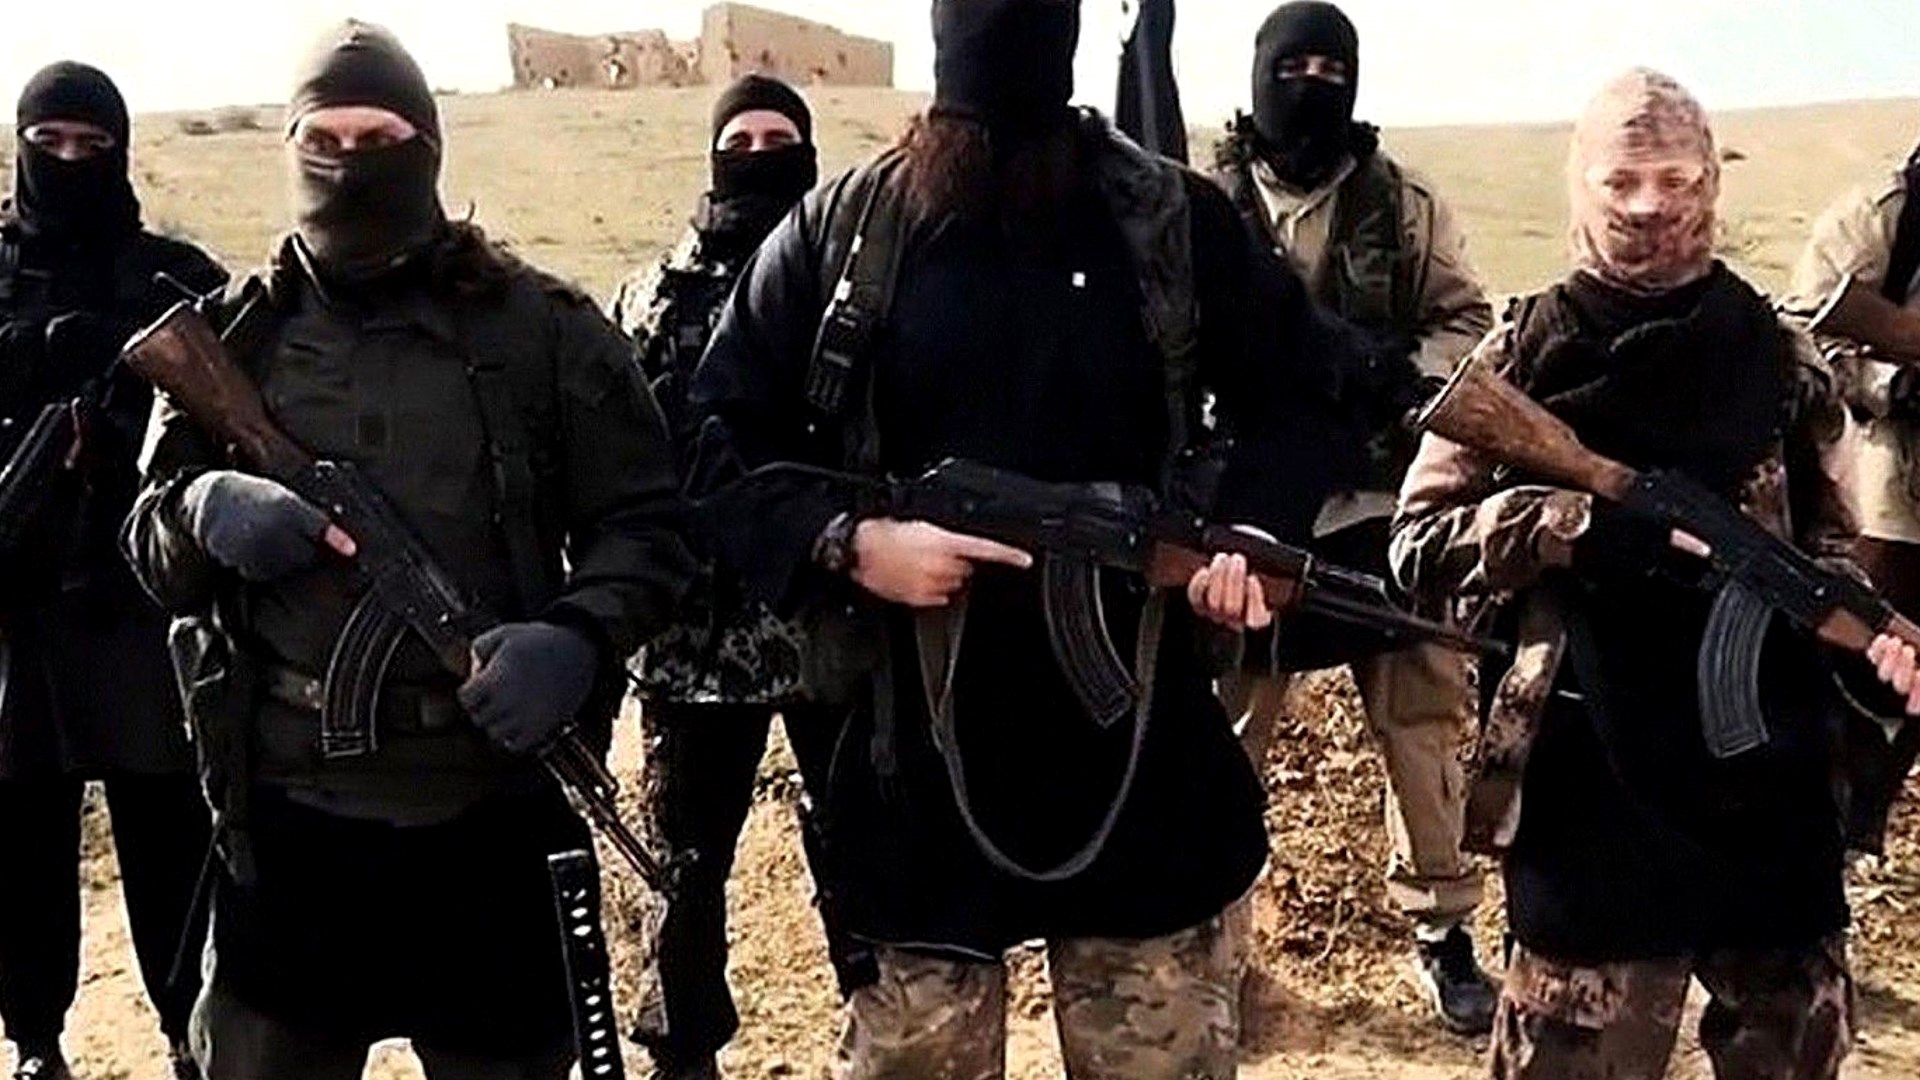 Το ISIS ανέλαβε την ευθύνη για το μακελειό στη Βαγδάτη